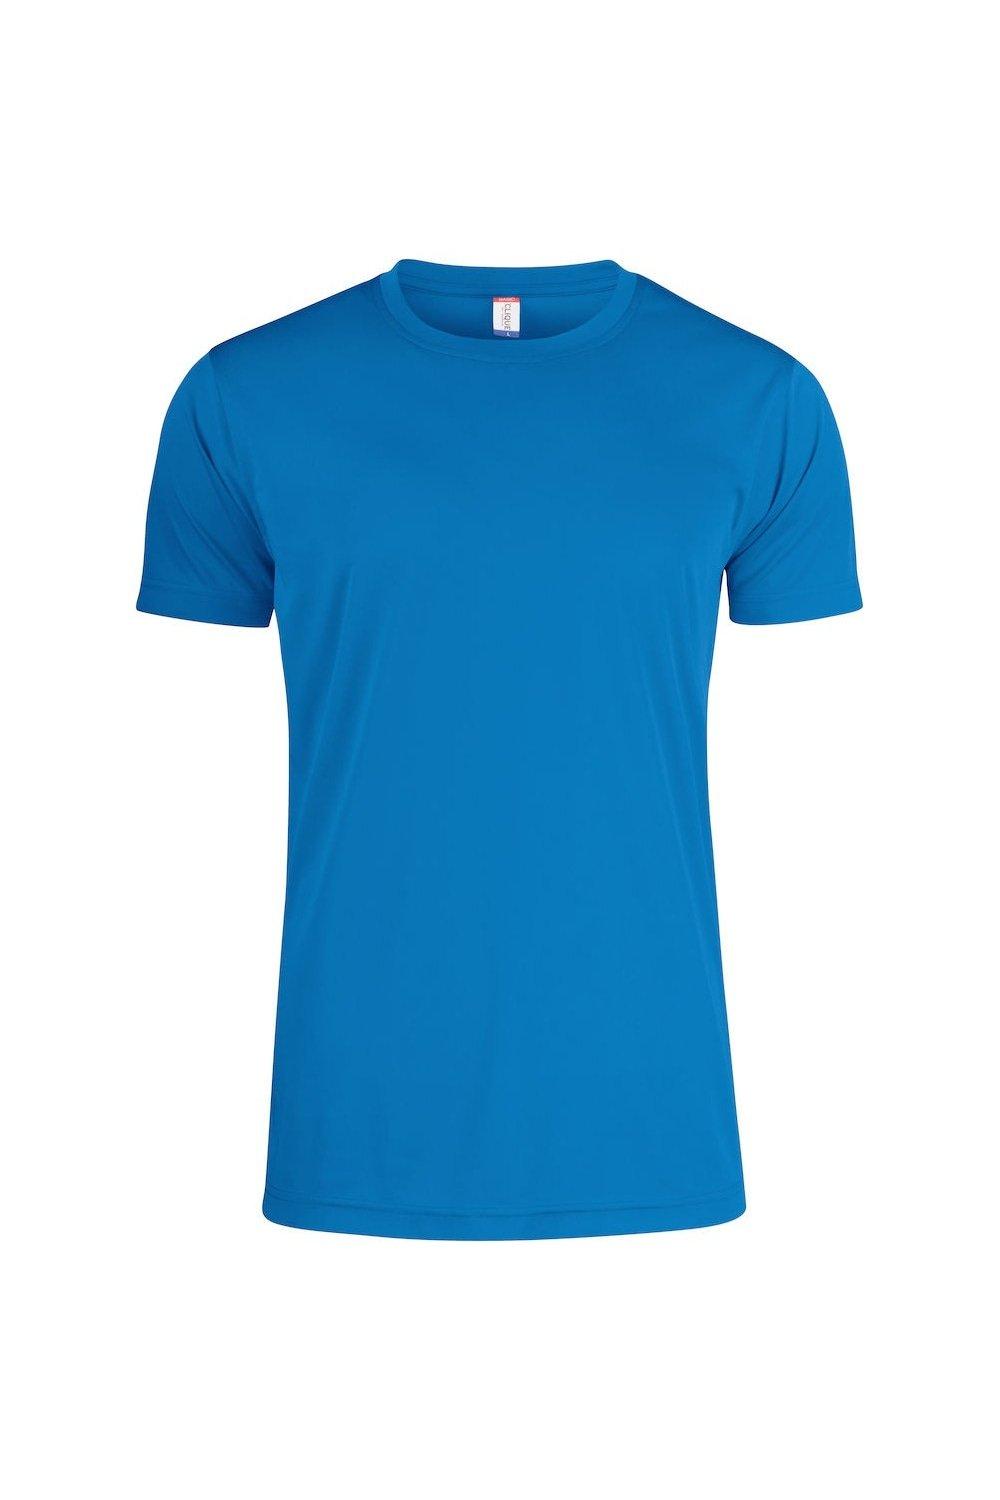 Базовая активная футболка Clique, синий базовая спортивная сумка clique синий